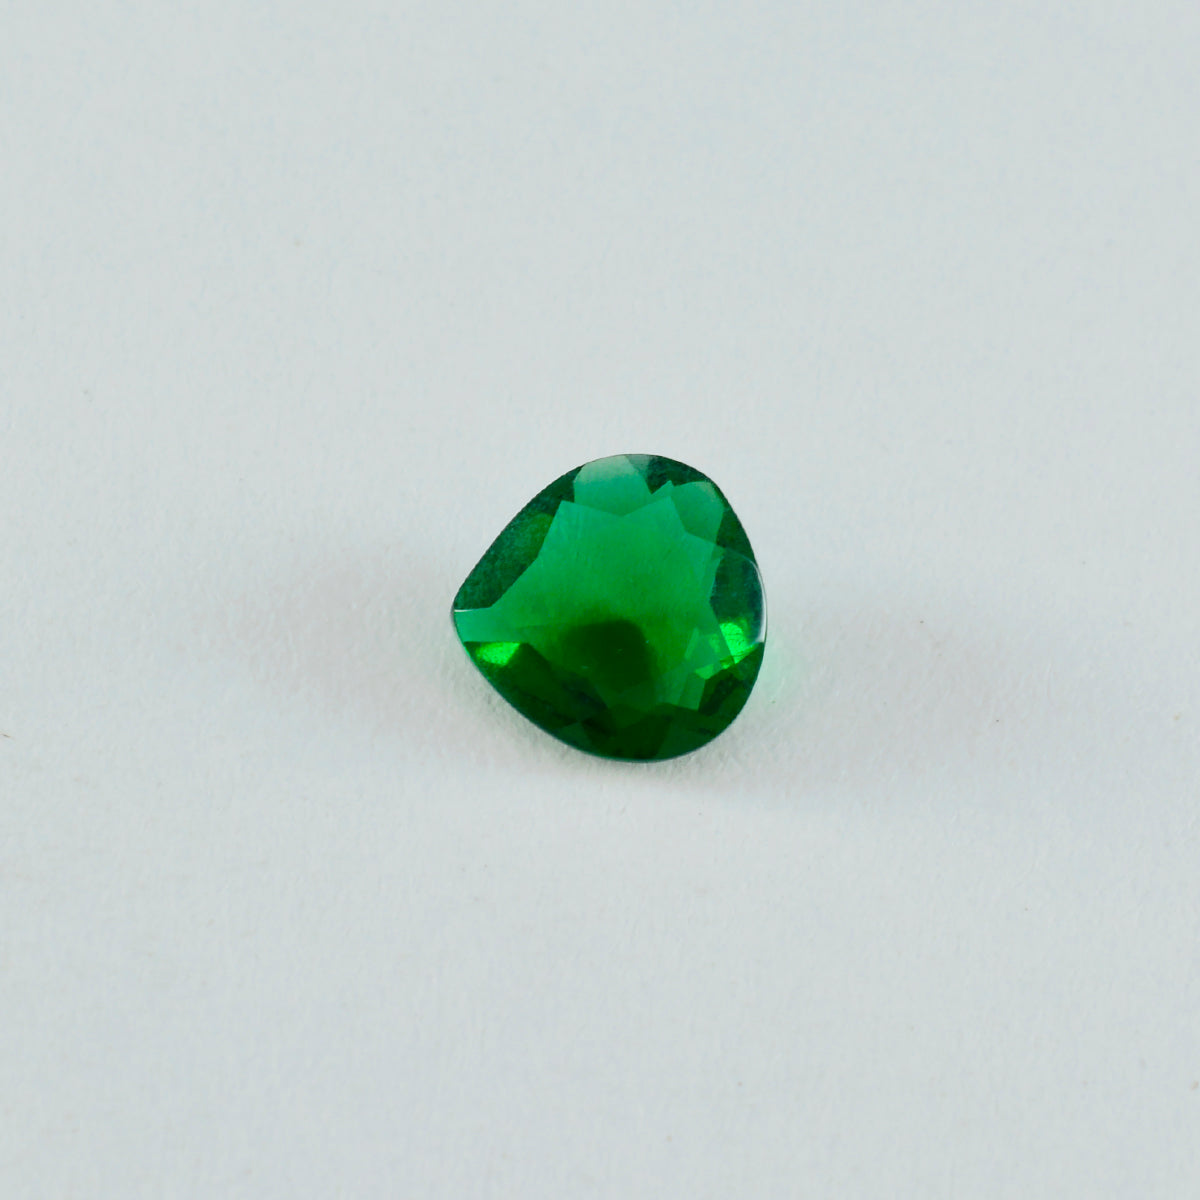 riyogems 1 шт., зеленый изумруд, граненый драгоценный камень 9x9 мм в форме сердца, отличное качество